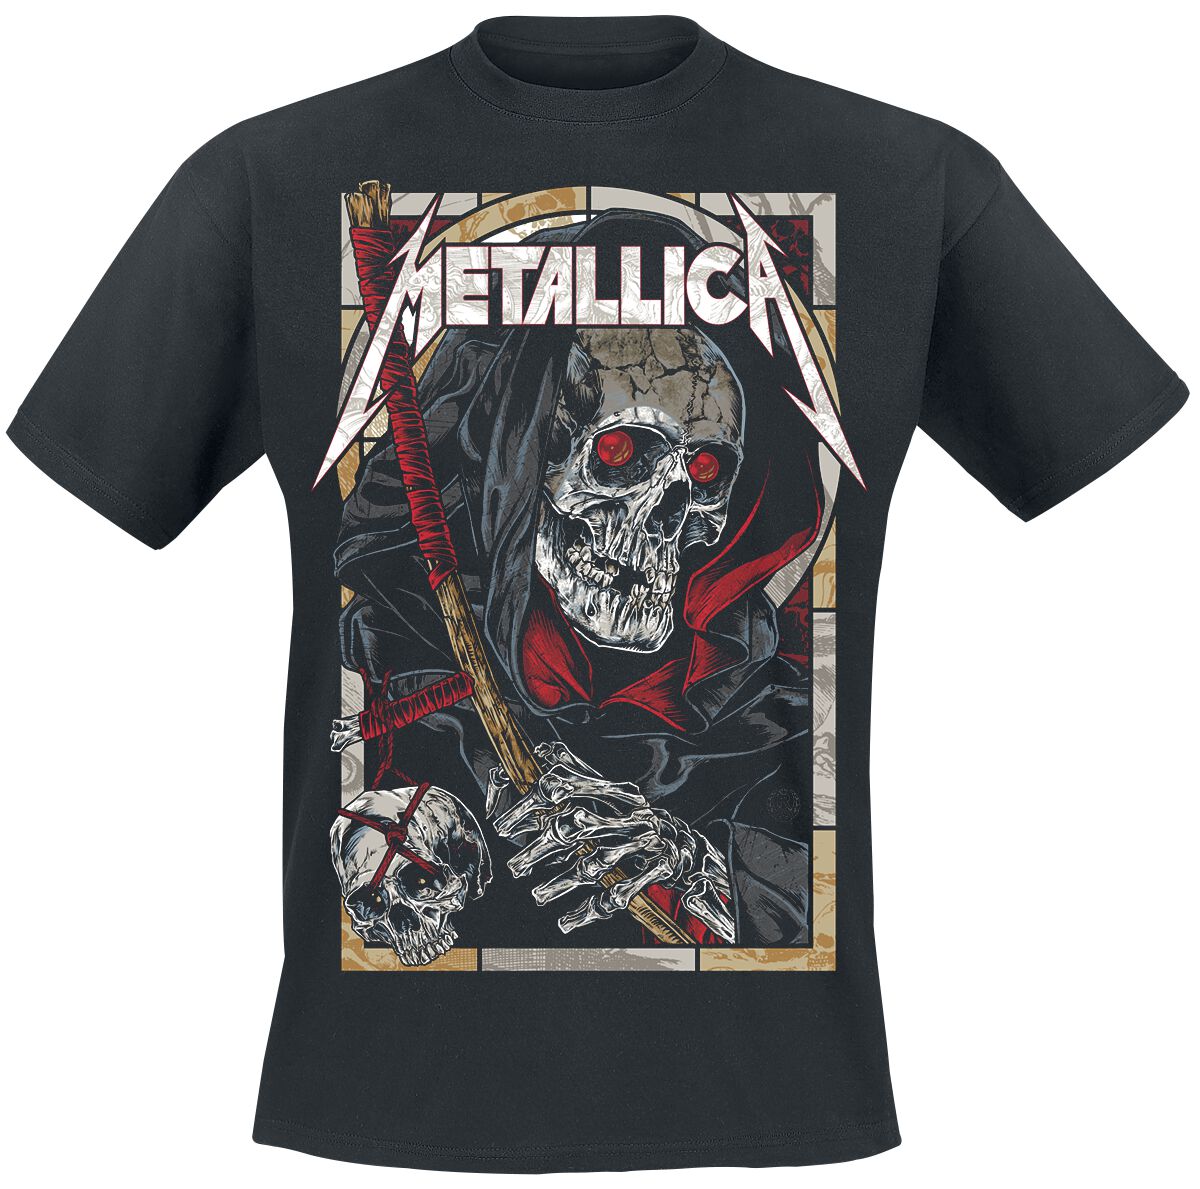 Metallica T-Shirt - Death Reaper - S bis 5XL - für Männer - Größe 5XL - schwarz  - Lizenziertes Merchandise!